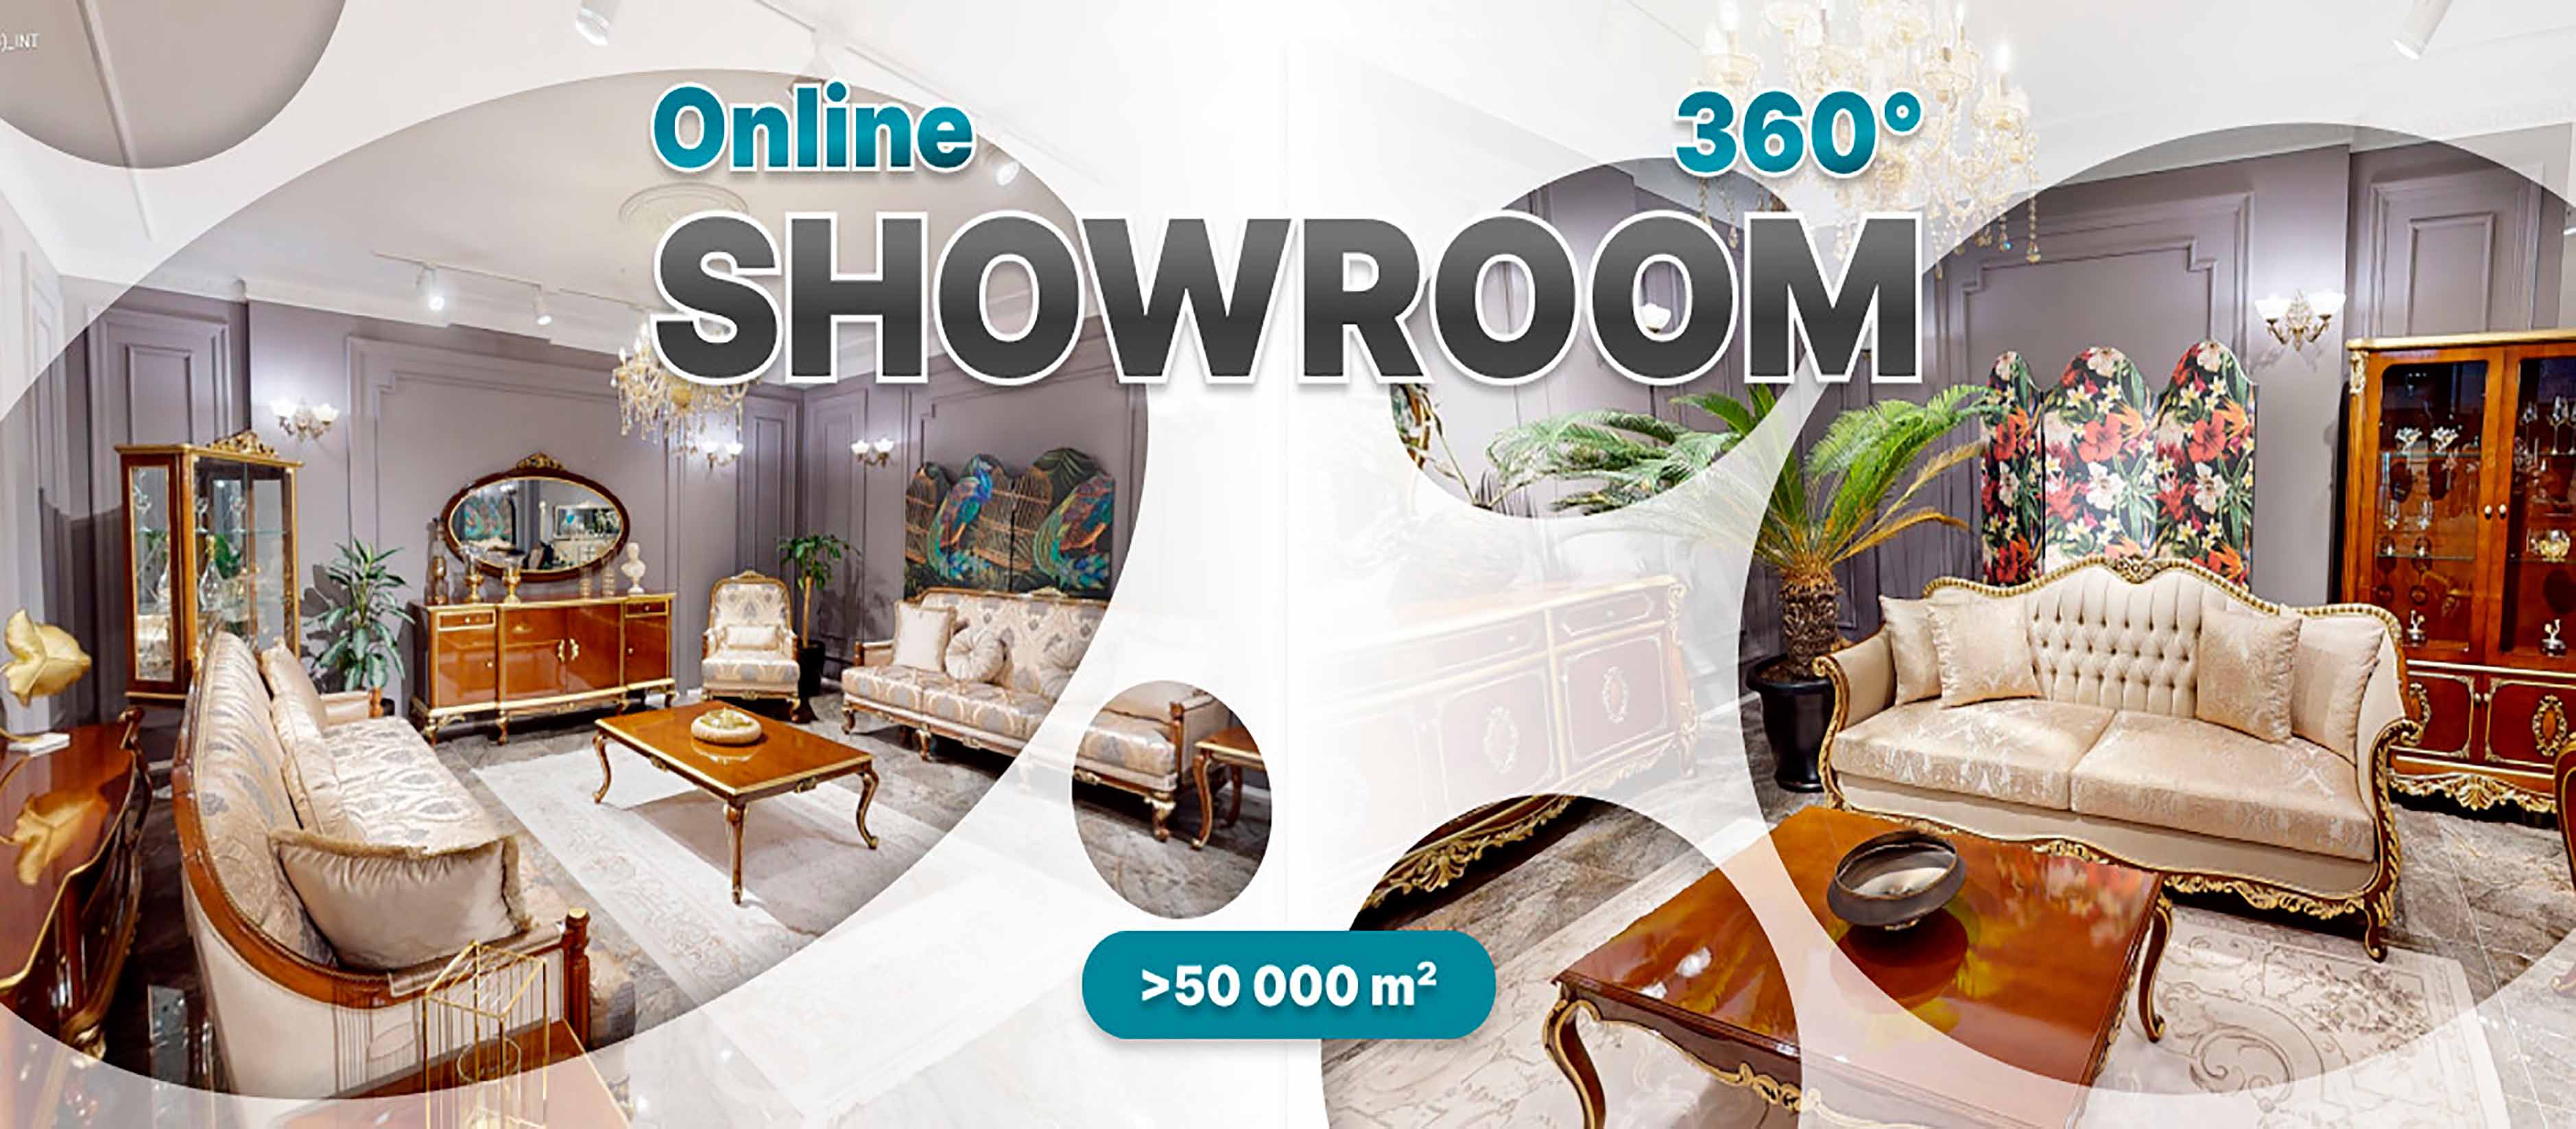 Jvmoebel Online Showroom besichtigen